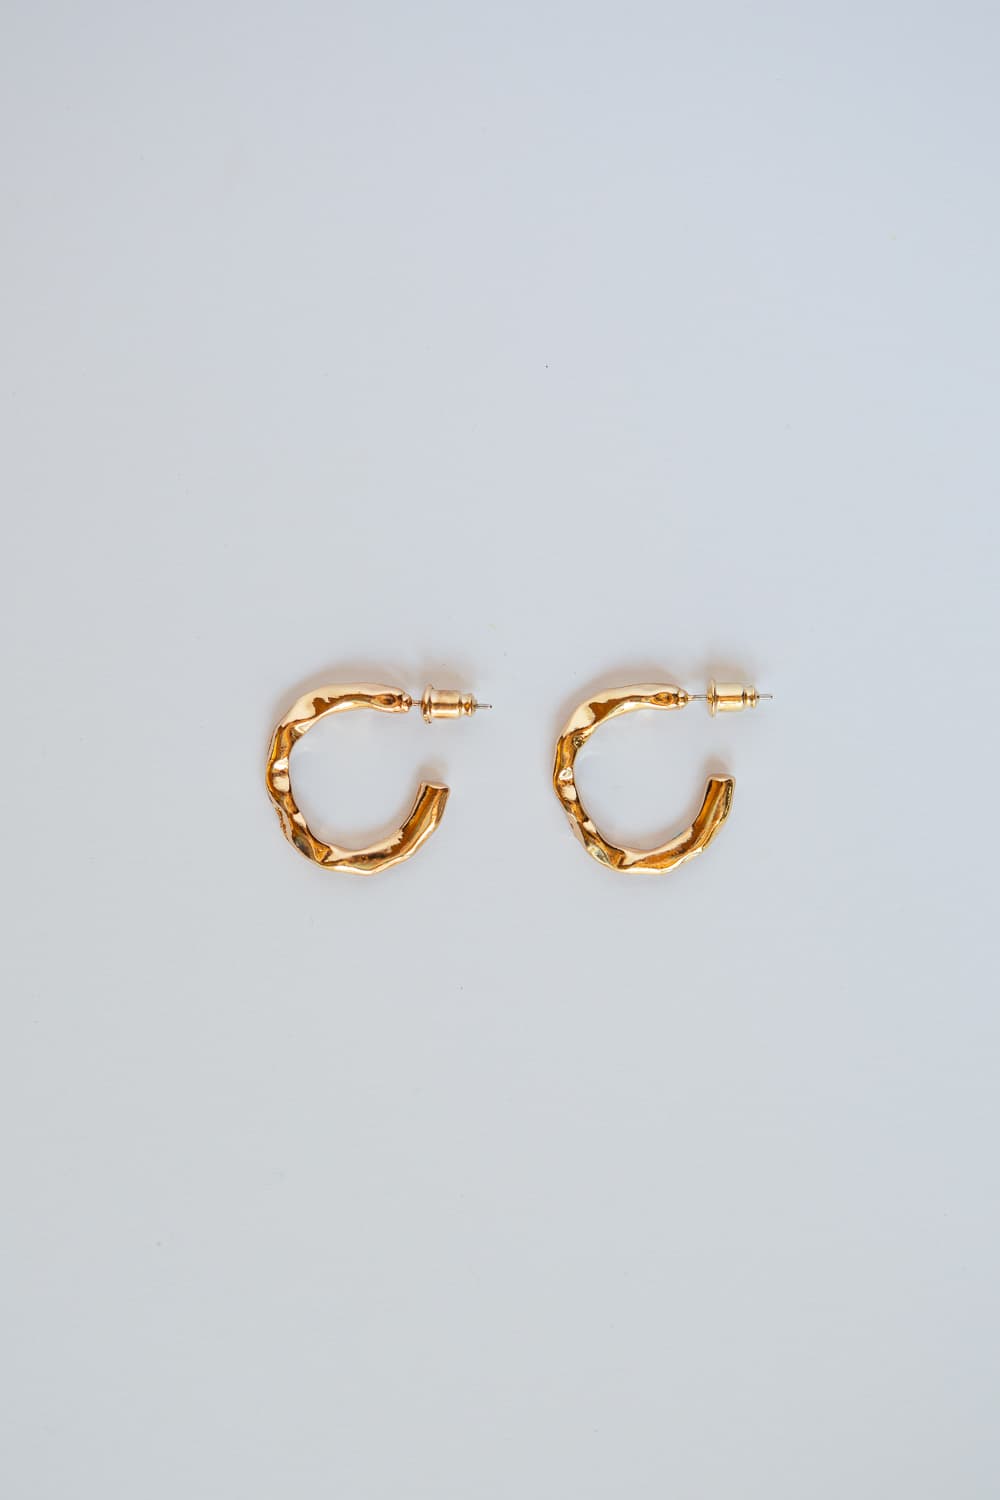 Gold Hammered Hoop Earrings - Wynter Bloom